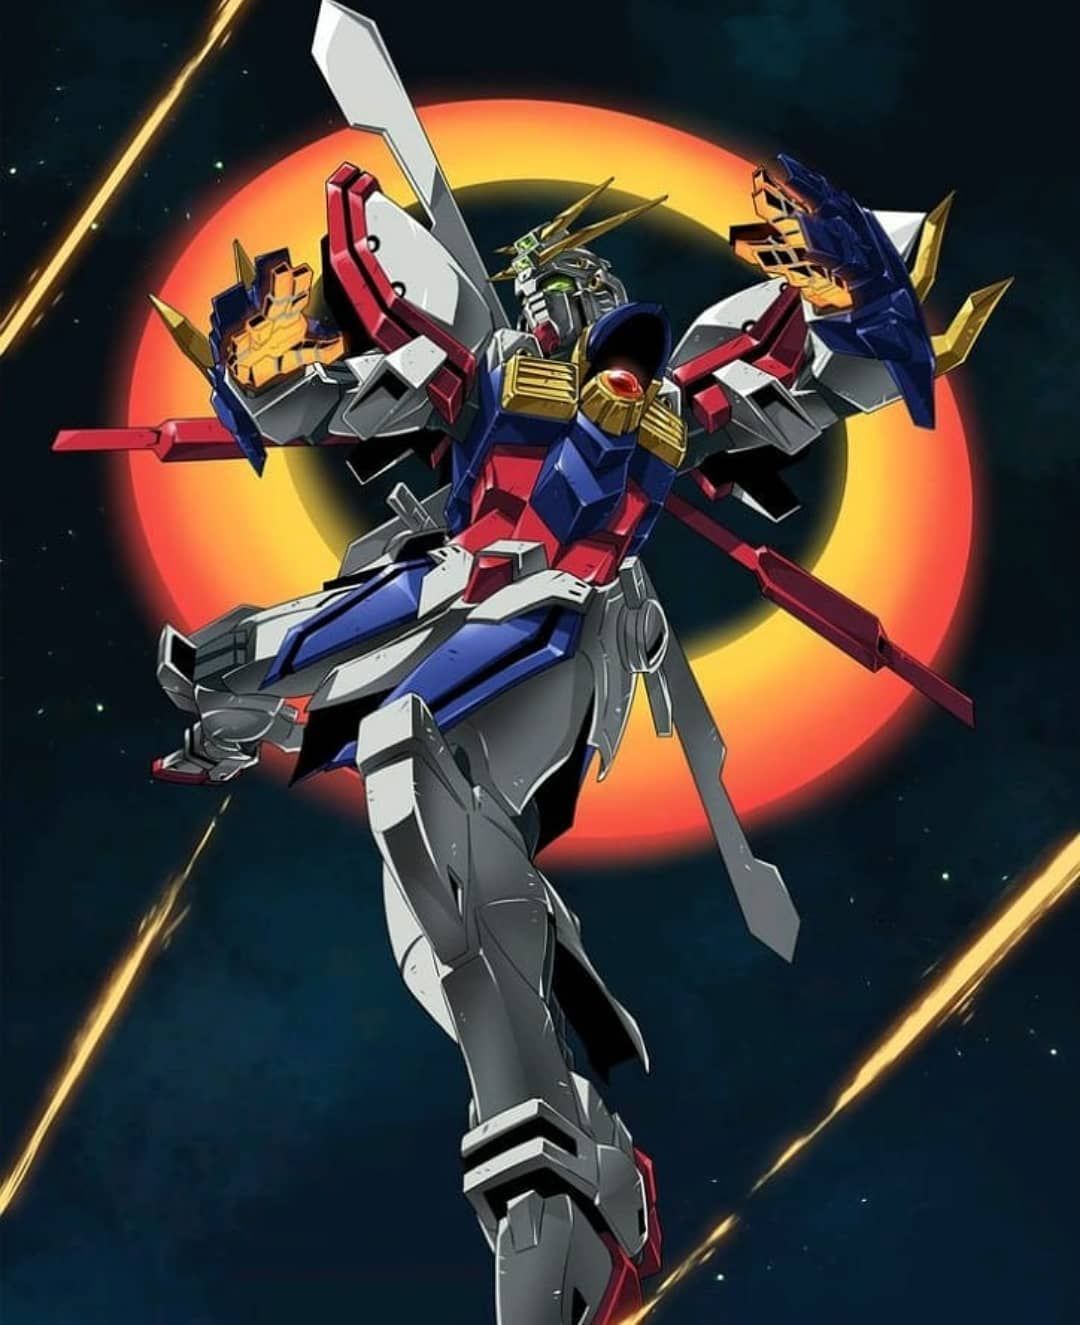 Planet Gundam On Instagram: “#Artwork, #illustration Burning God Gundam Source,. Gundam Art, Gundam, Gundam Wallpaper